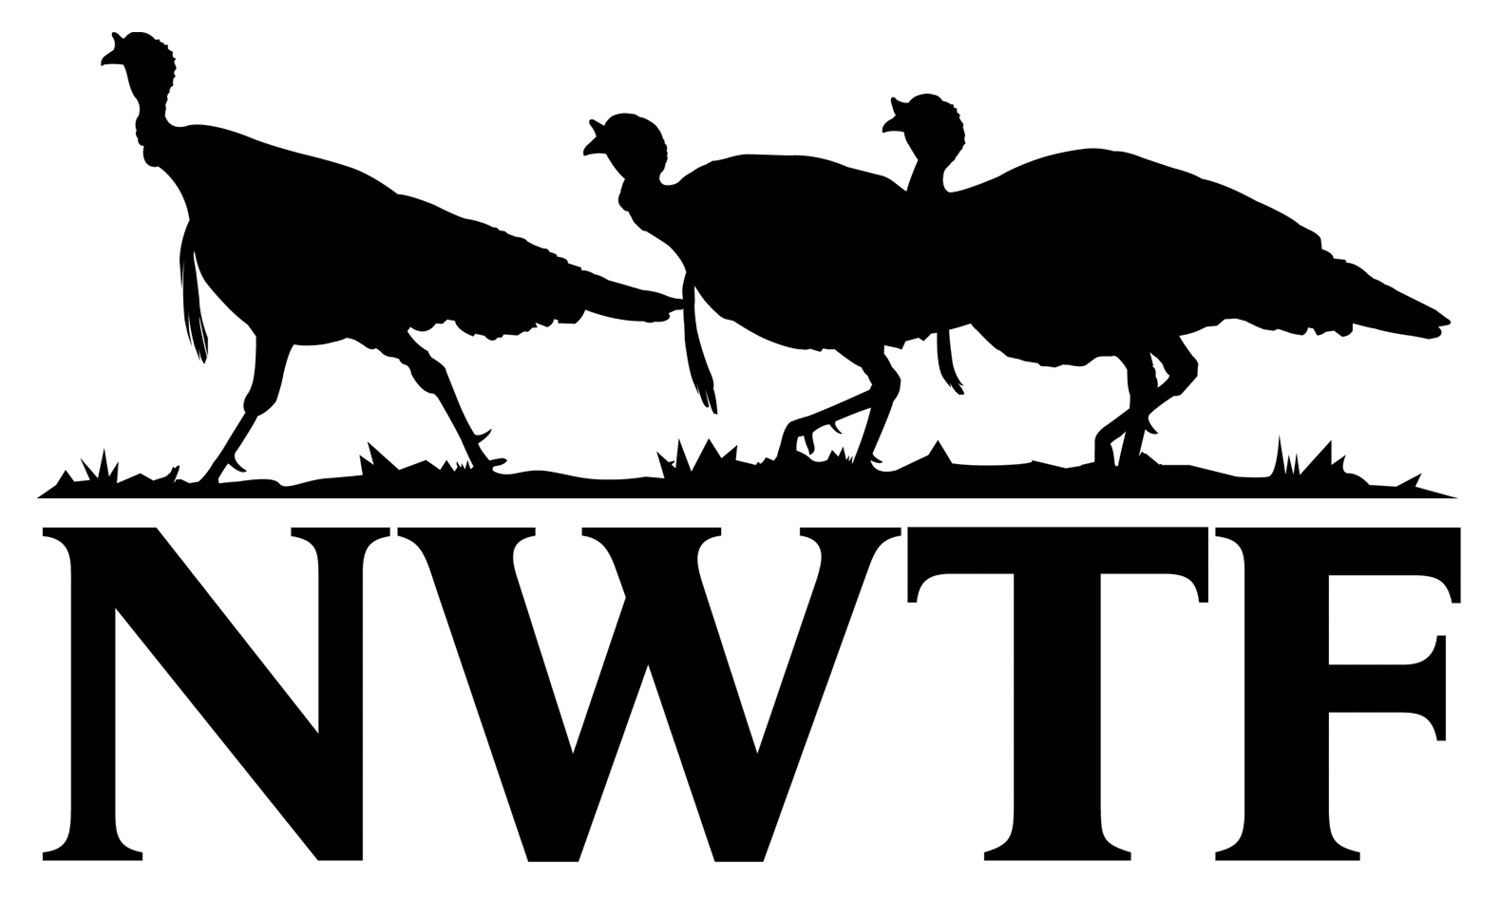 NWTF logo no slogan